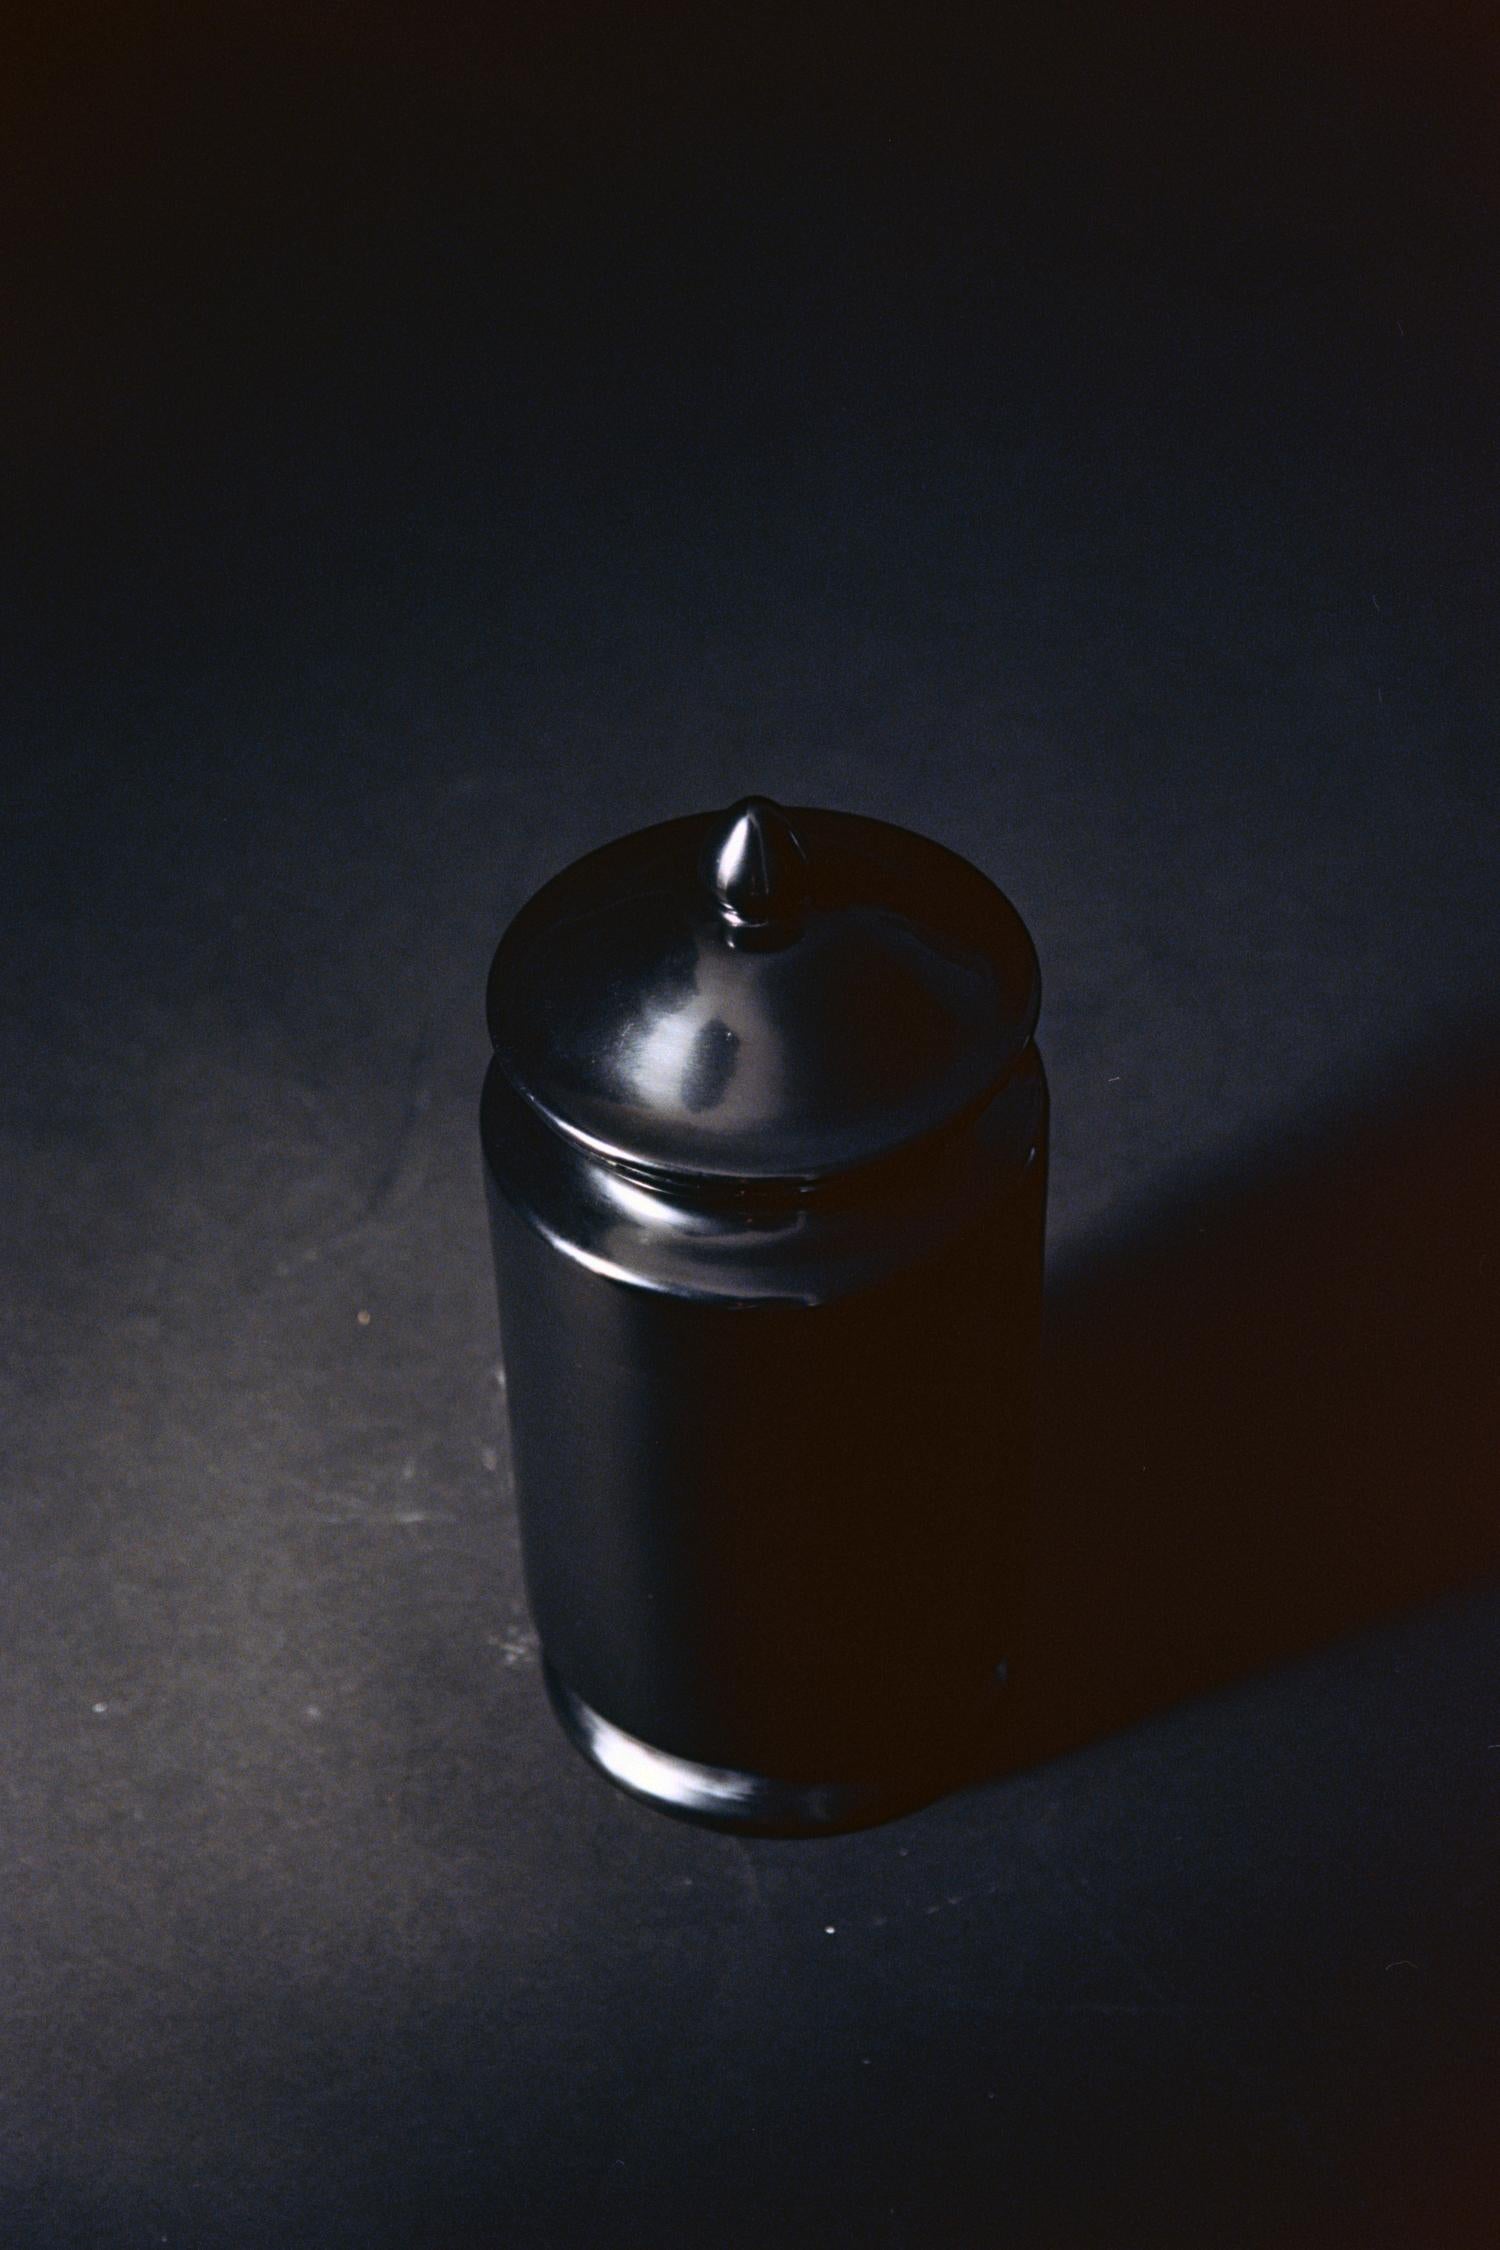 La jarre Albarello de Coseincorso
Dimensions : Ø 16 x H 37 cm : Ø 16 x H 37 cm.
MATERIAL : Céramique avec glaçure sans plomb.
 
L'Albarello s'inspire des jarres médicinales utilisées pour contenir les onguents et les médicaments secs des